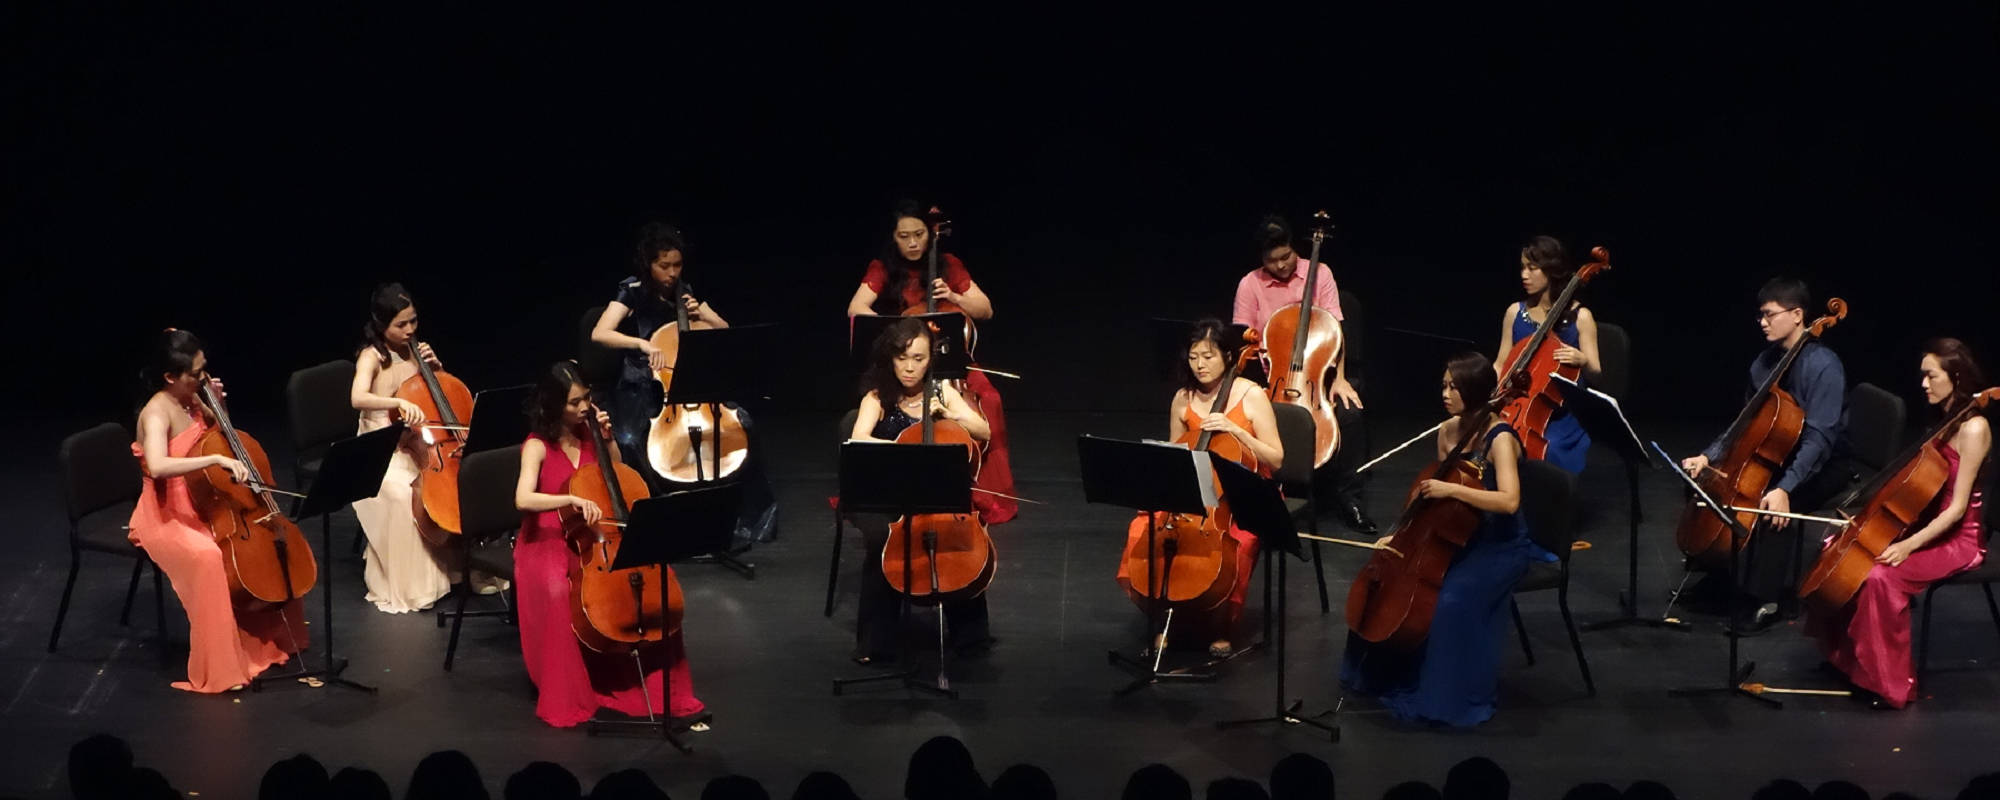 2019 Hotshot Cello Choir Concert ~ Vivid Formosa